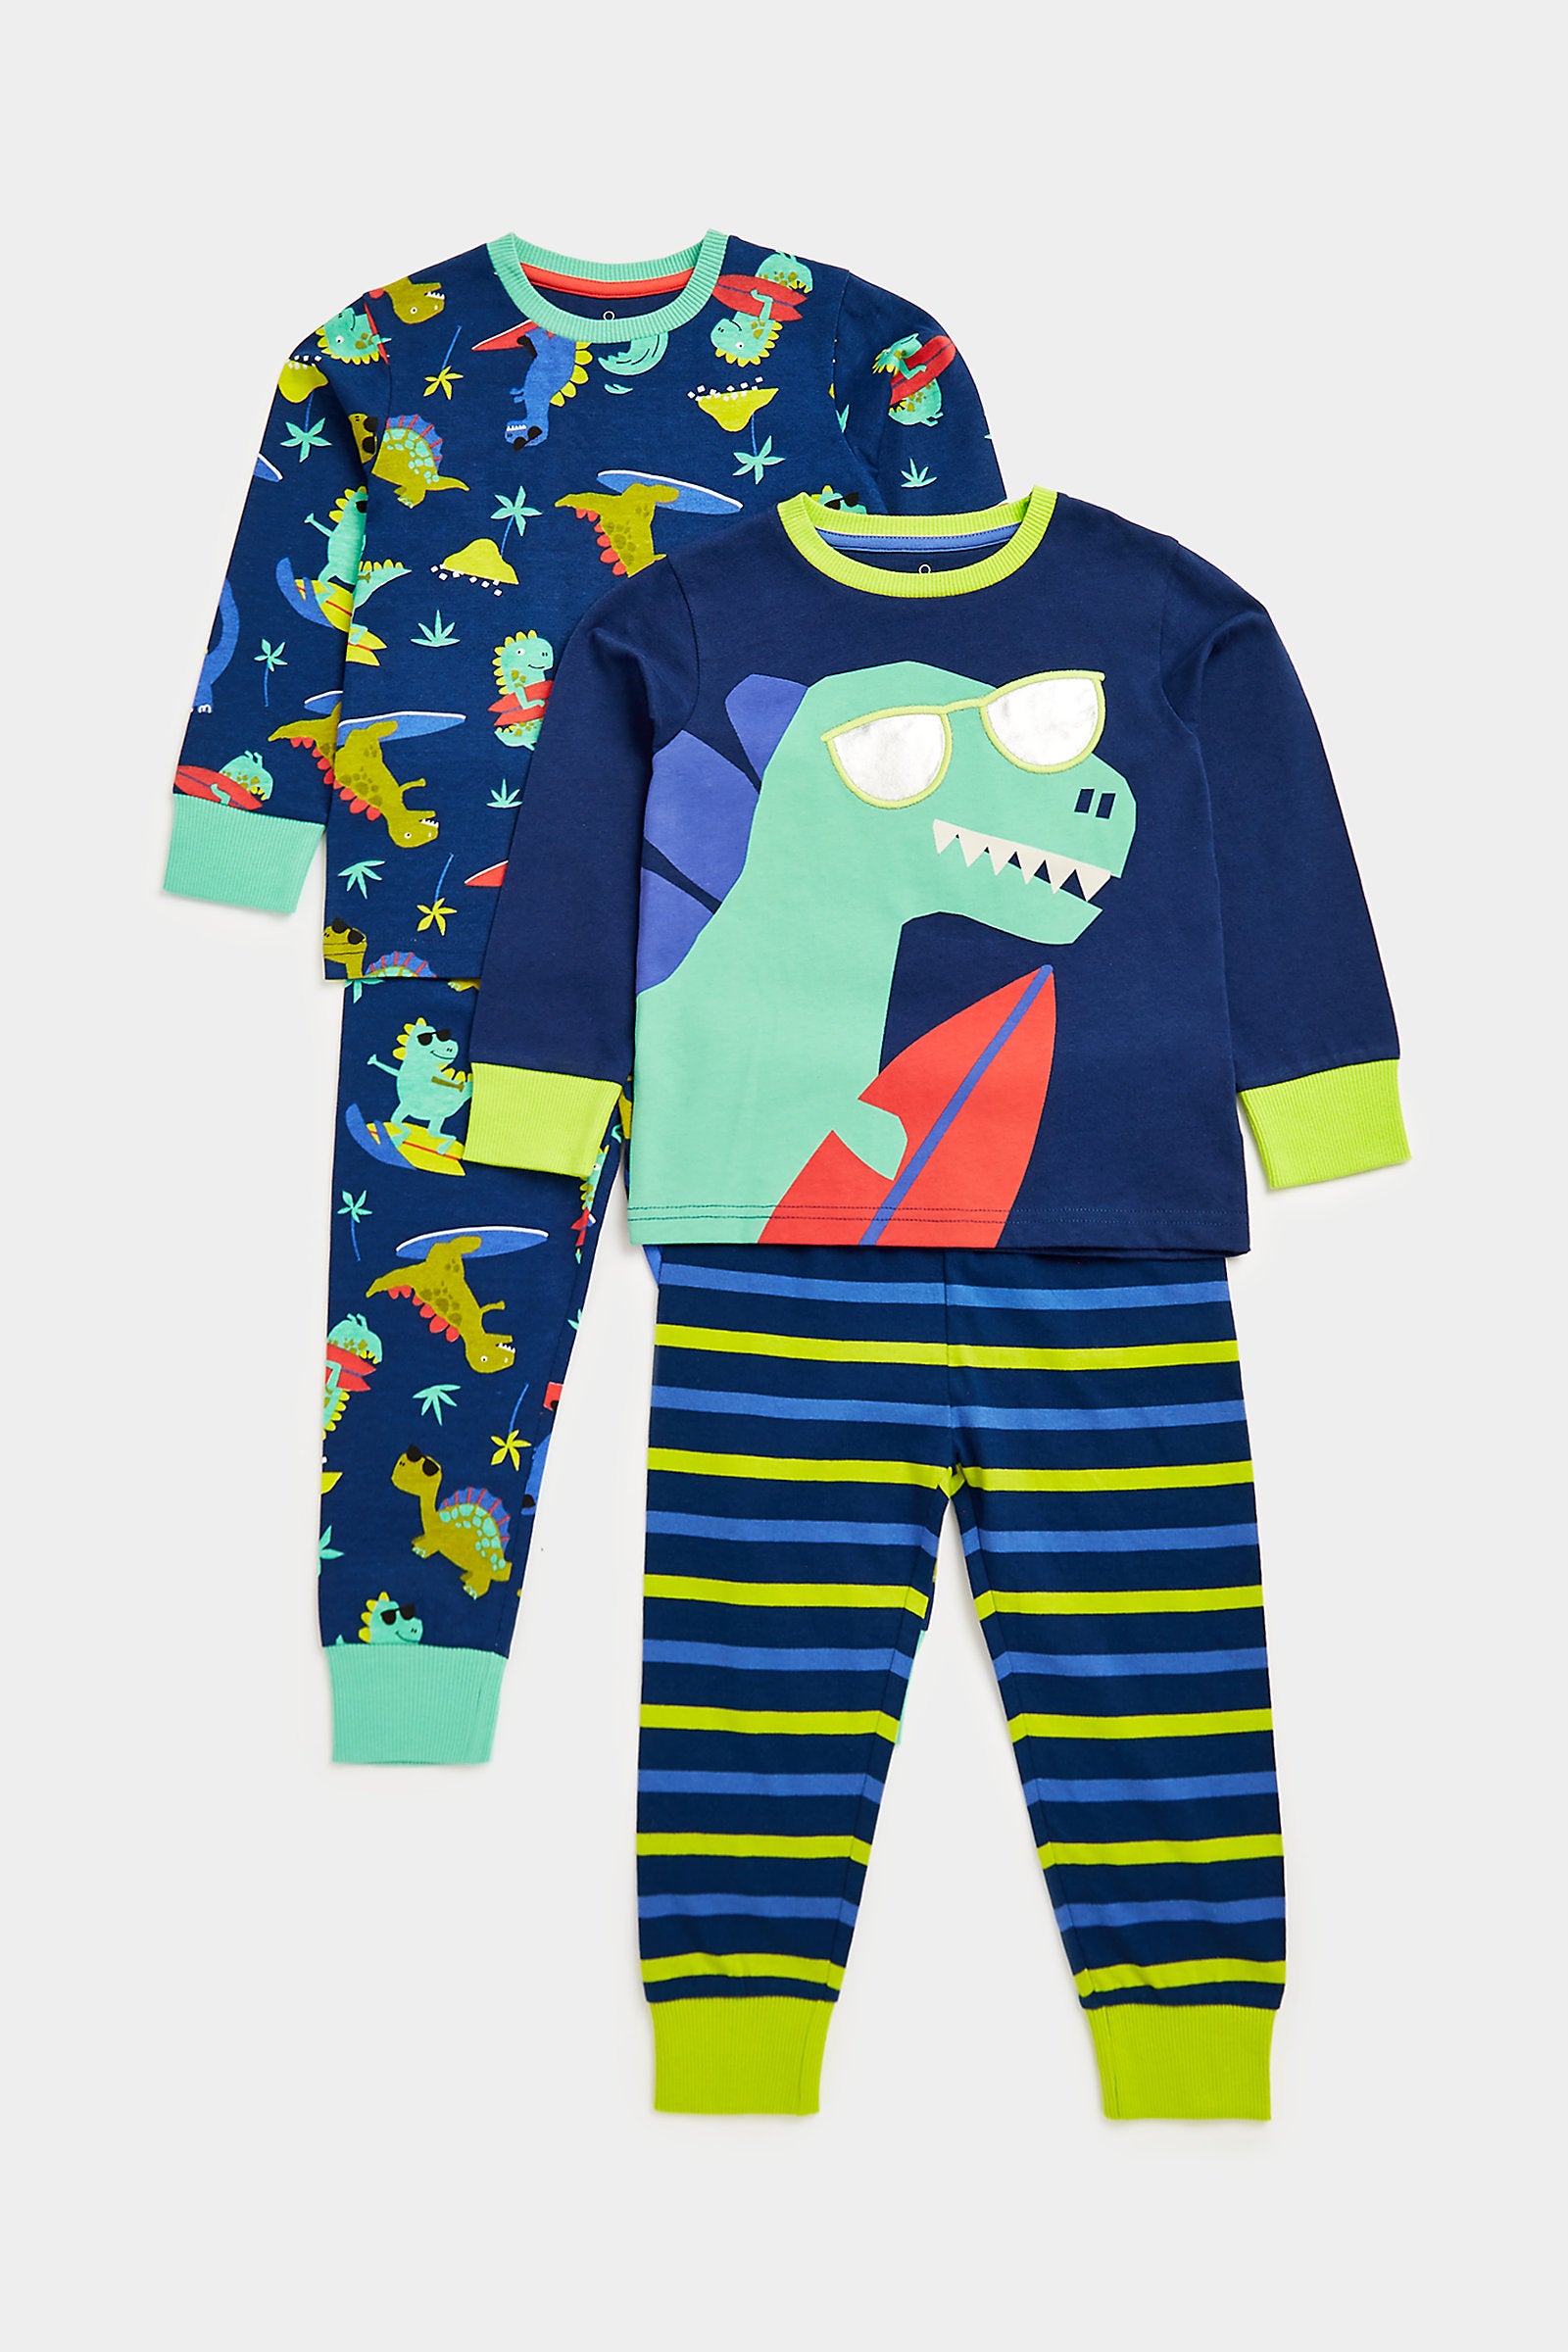 Mothercare Surfing Dino Pyjamas - 2 Pack